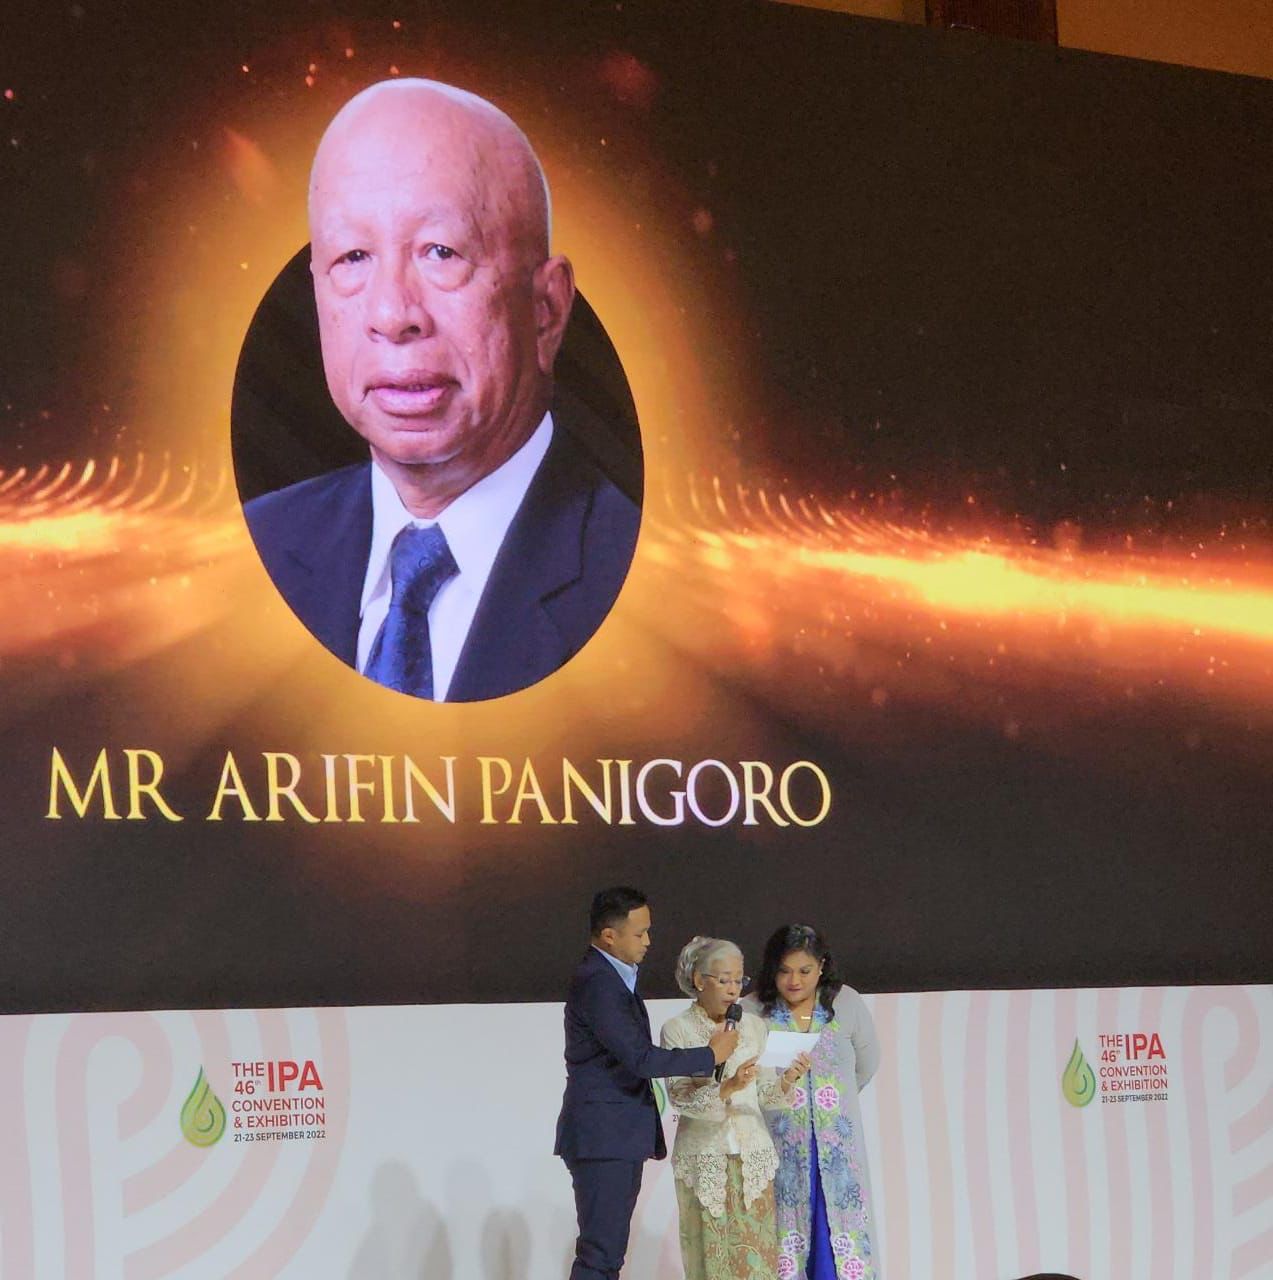 IPA Beri Penghargaan ke Arifin Panigoro